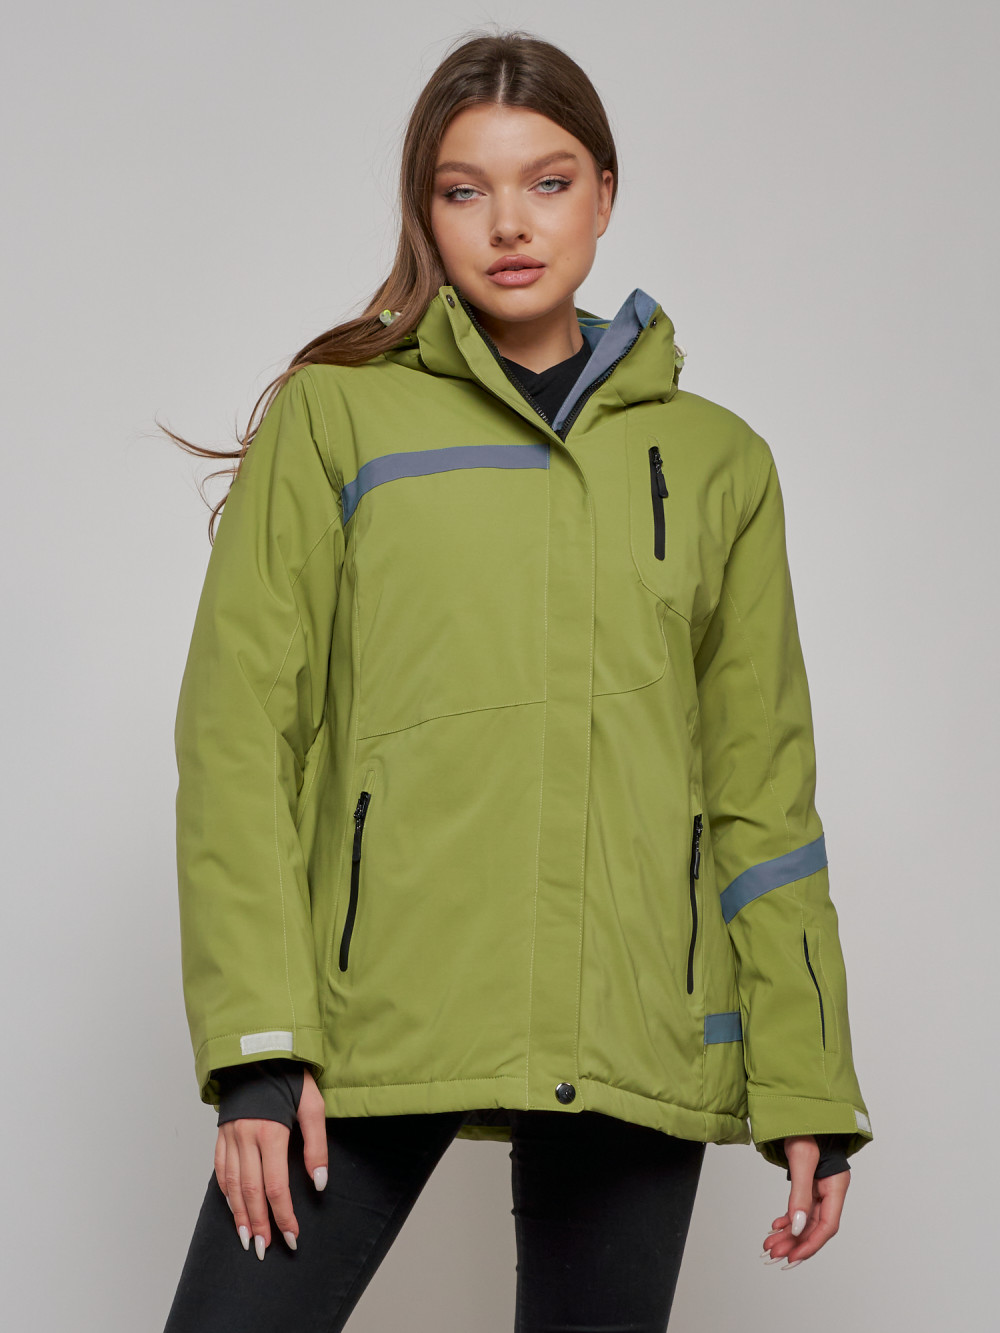 Купить оптом Горнолыжная куртка женская зимняя большого размера цвета хаки 3382Kh в Казани